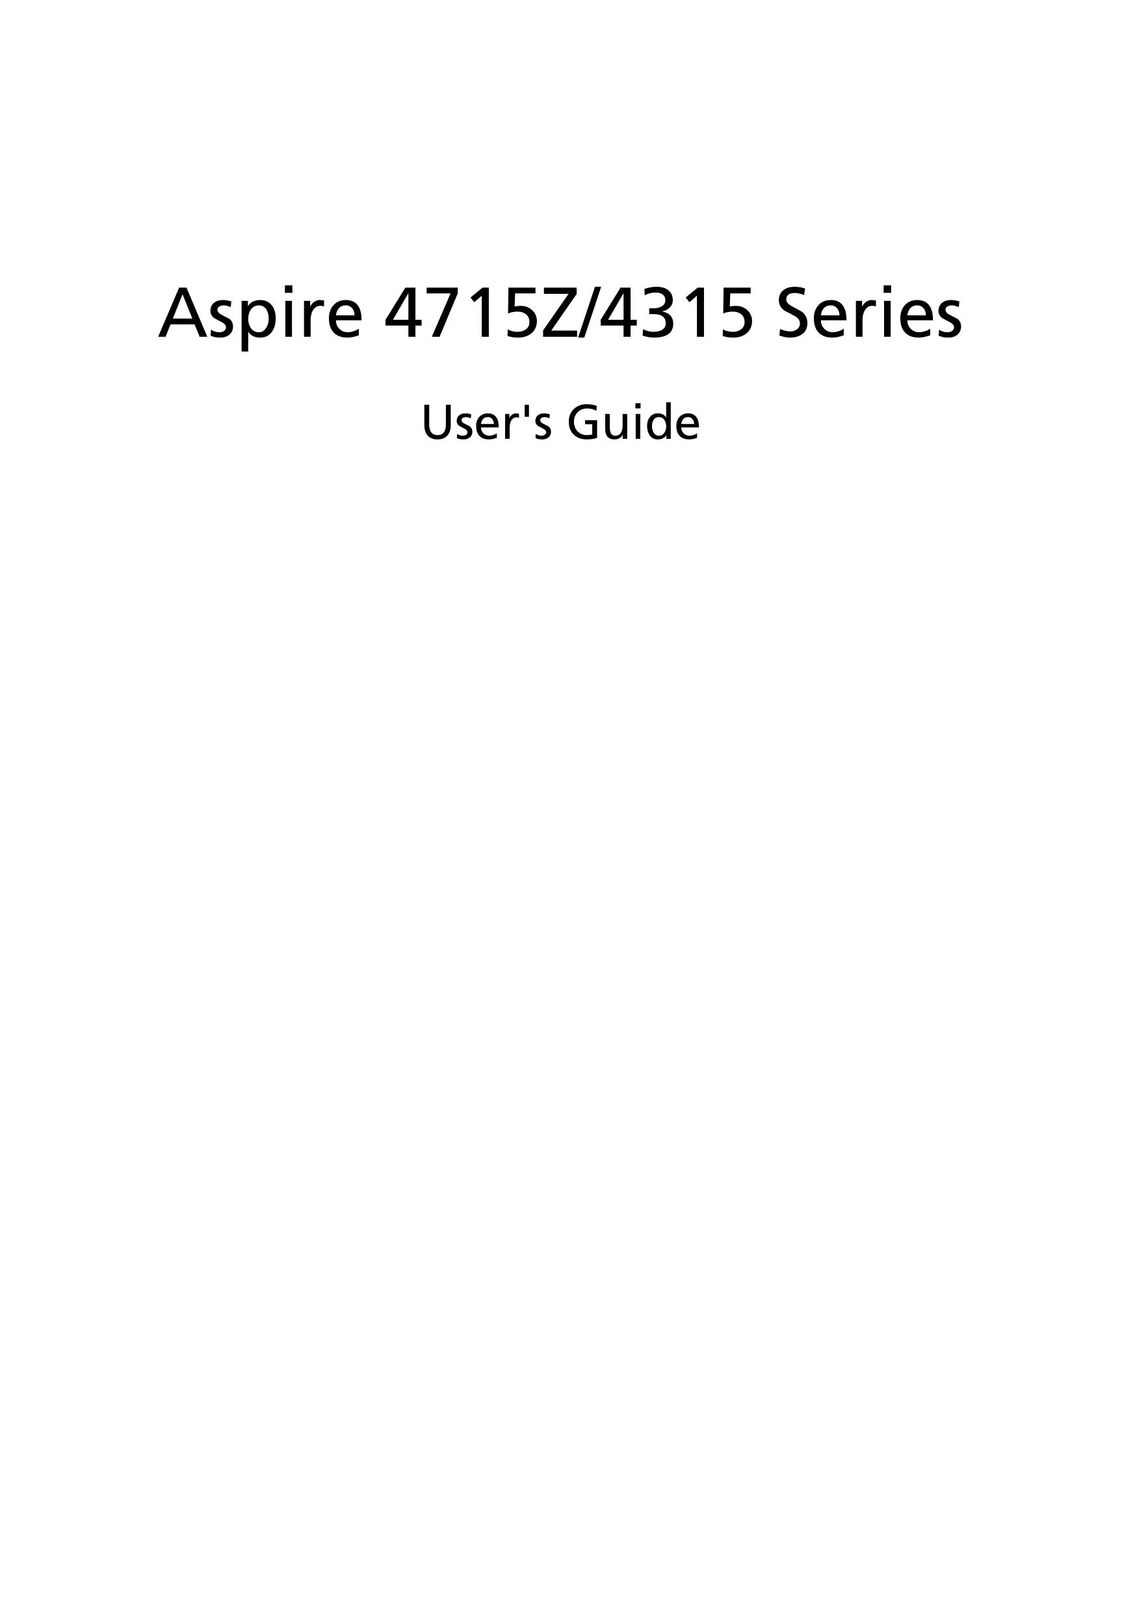 Aspire Digital 4715Z Laptop User Manual